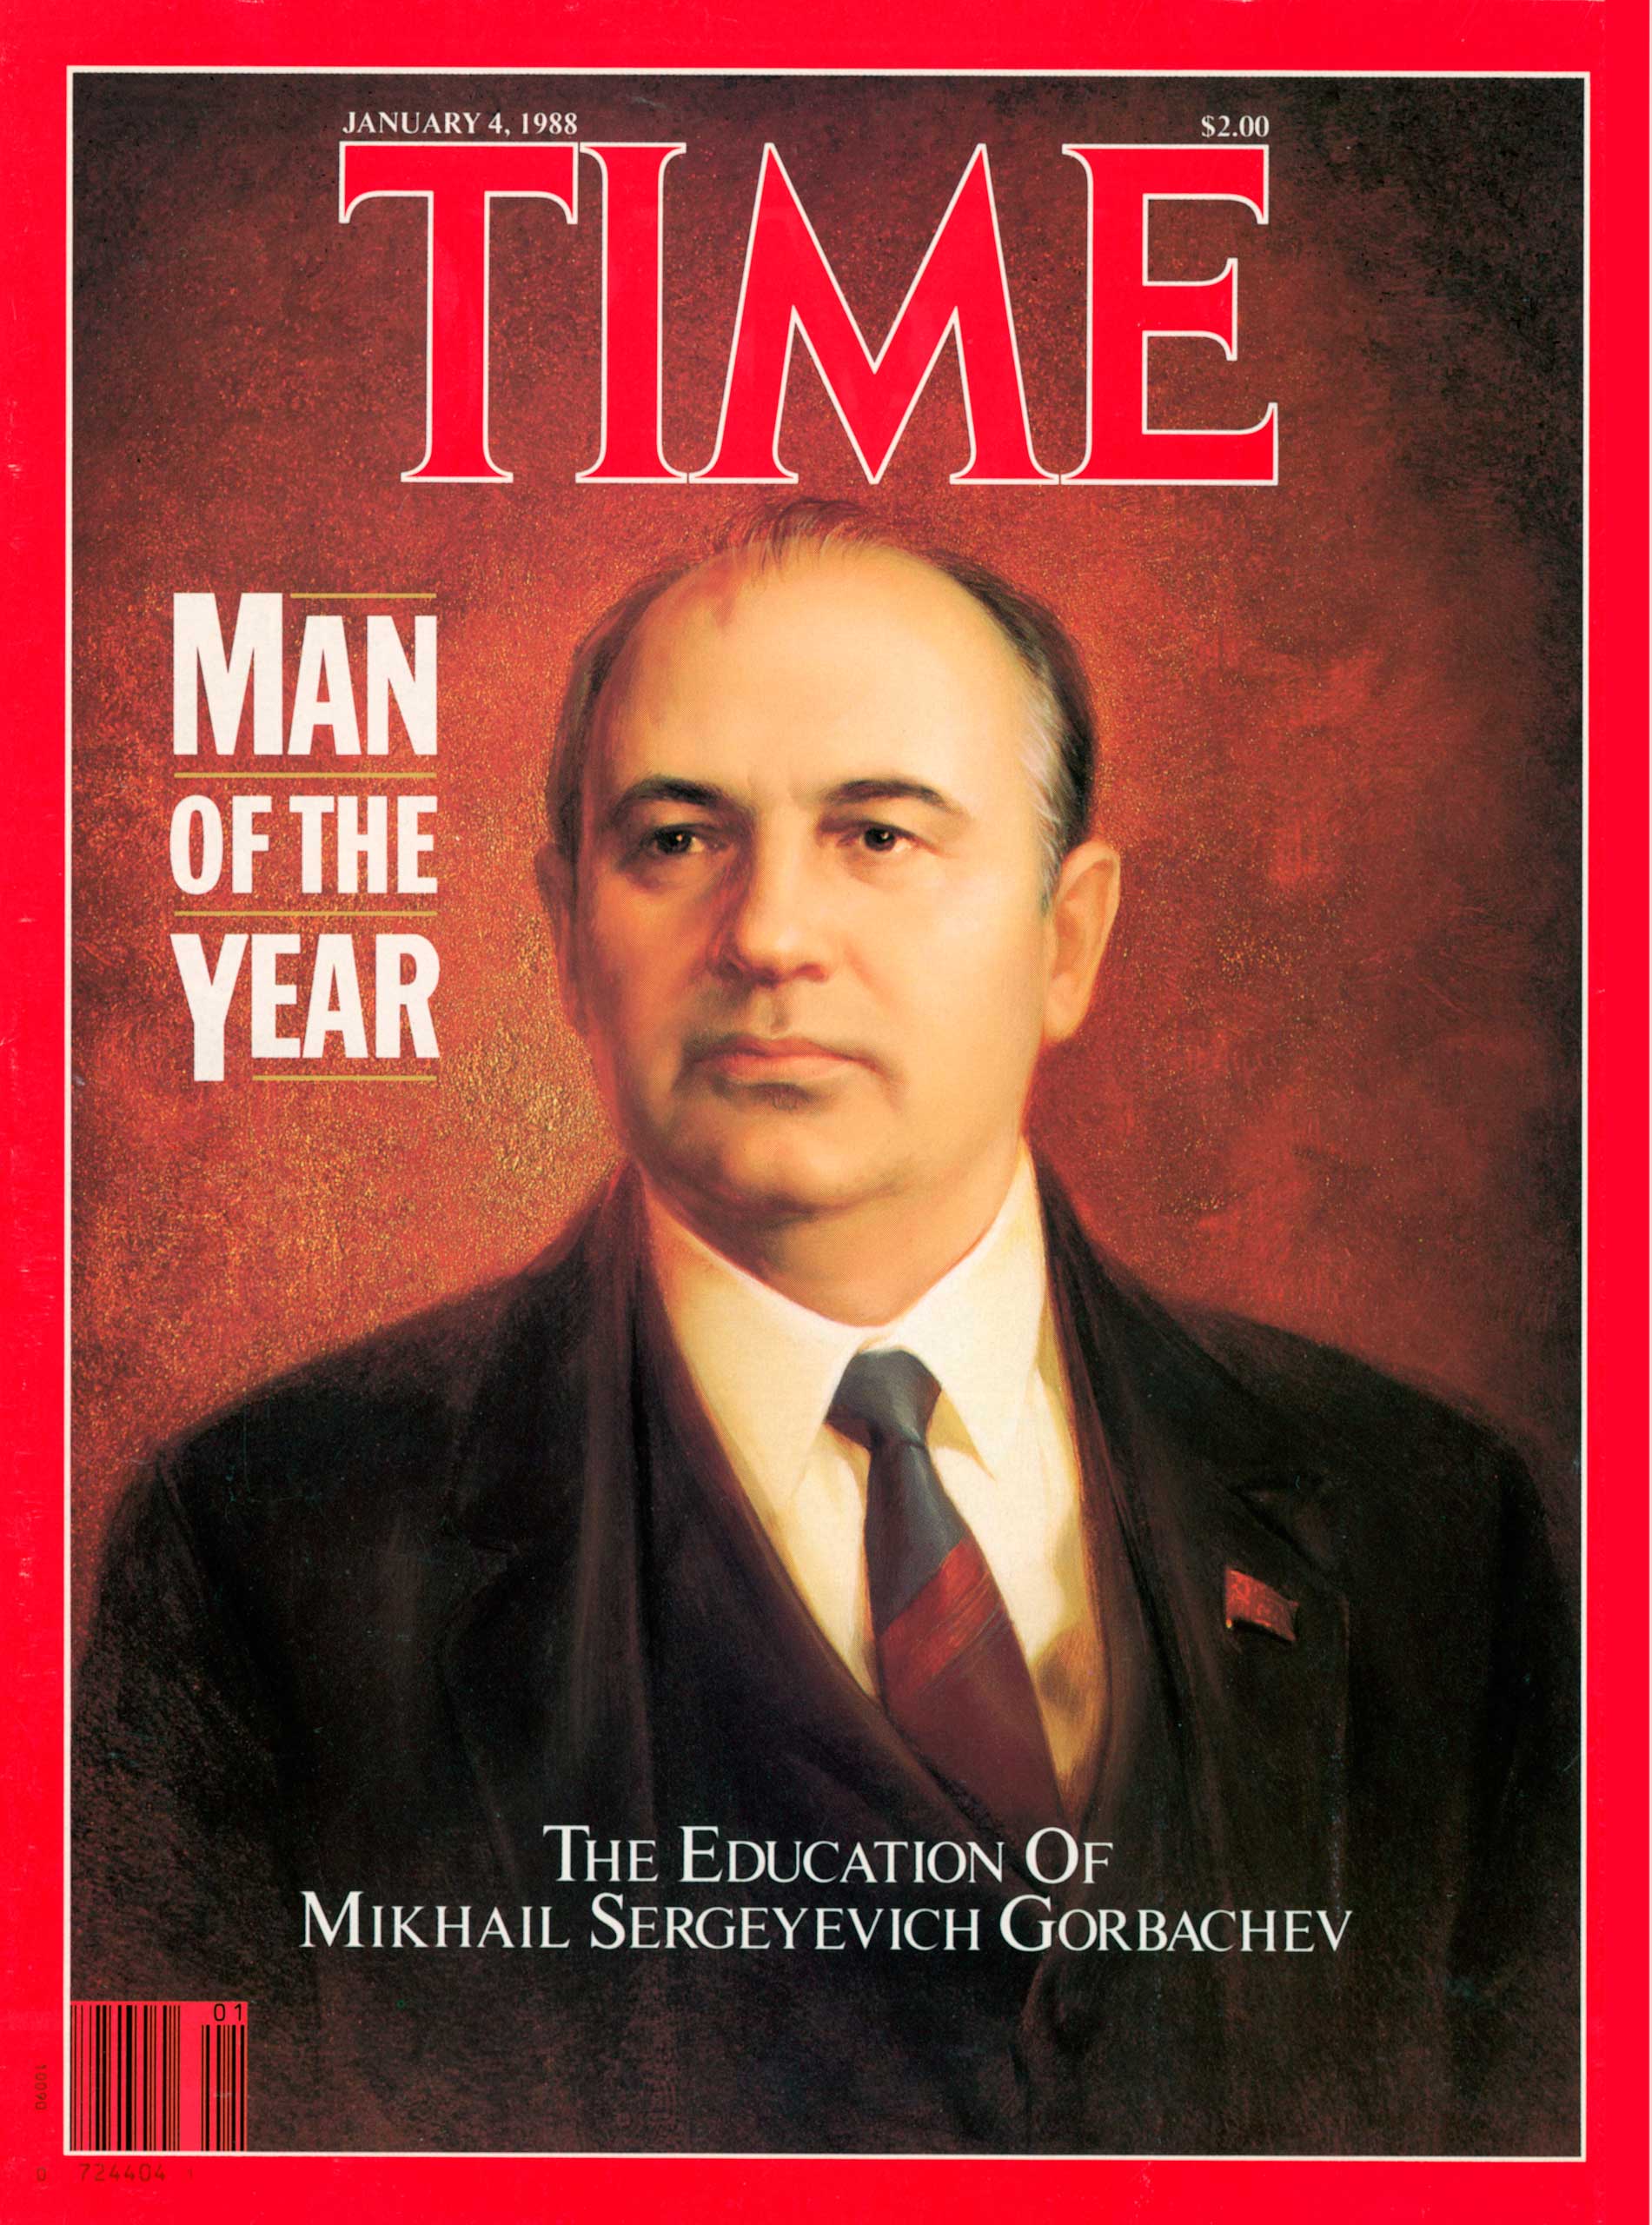 1987: Mikhail Gorbachev